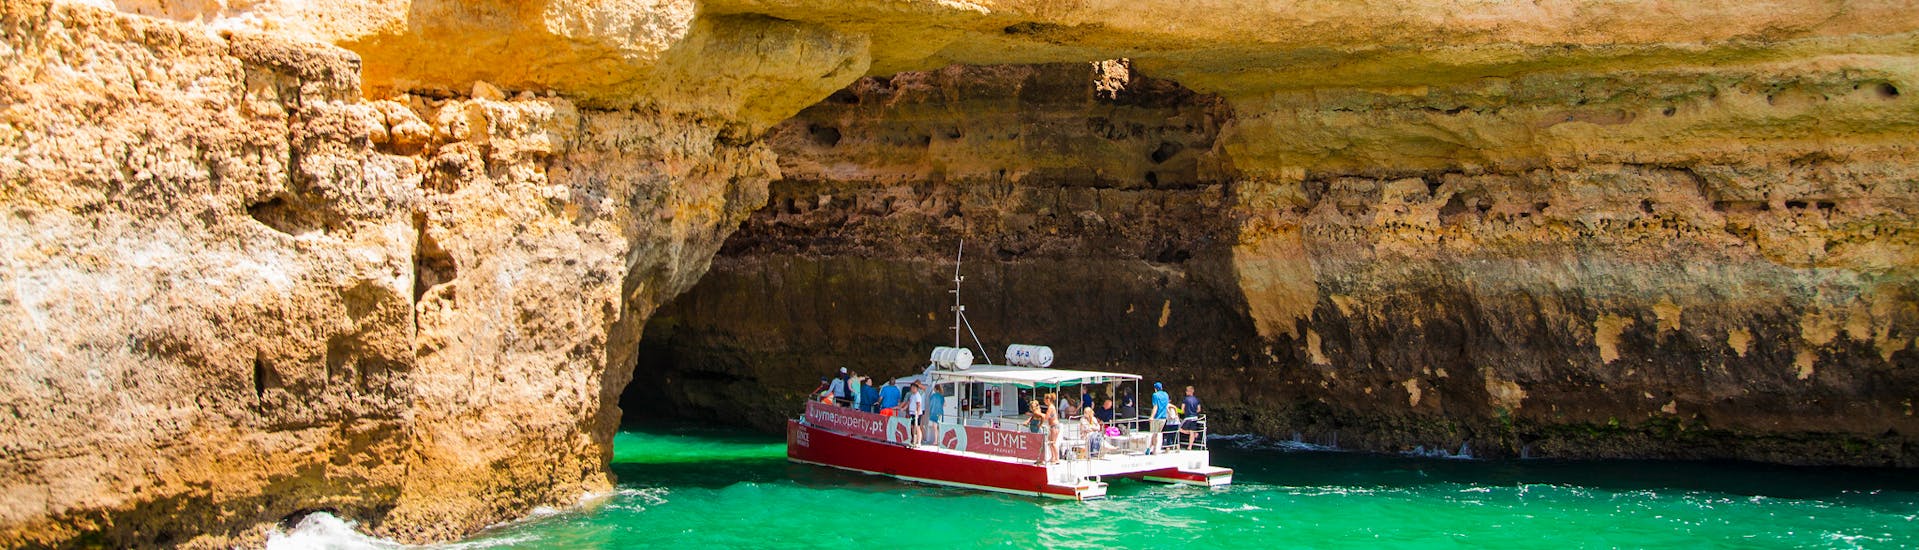 Mehrere Boote besuchen während einer Bootstour eine Höhle am Ufer.